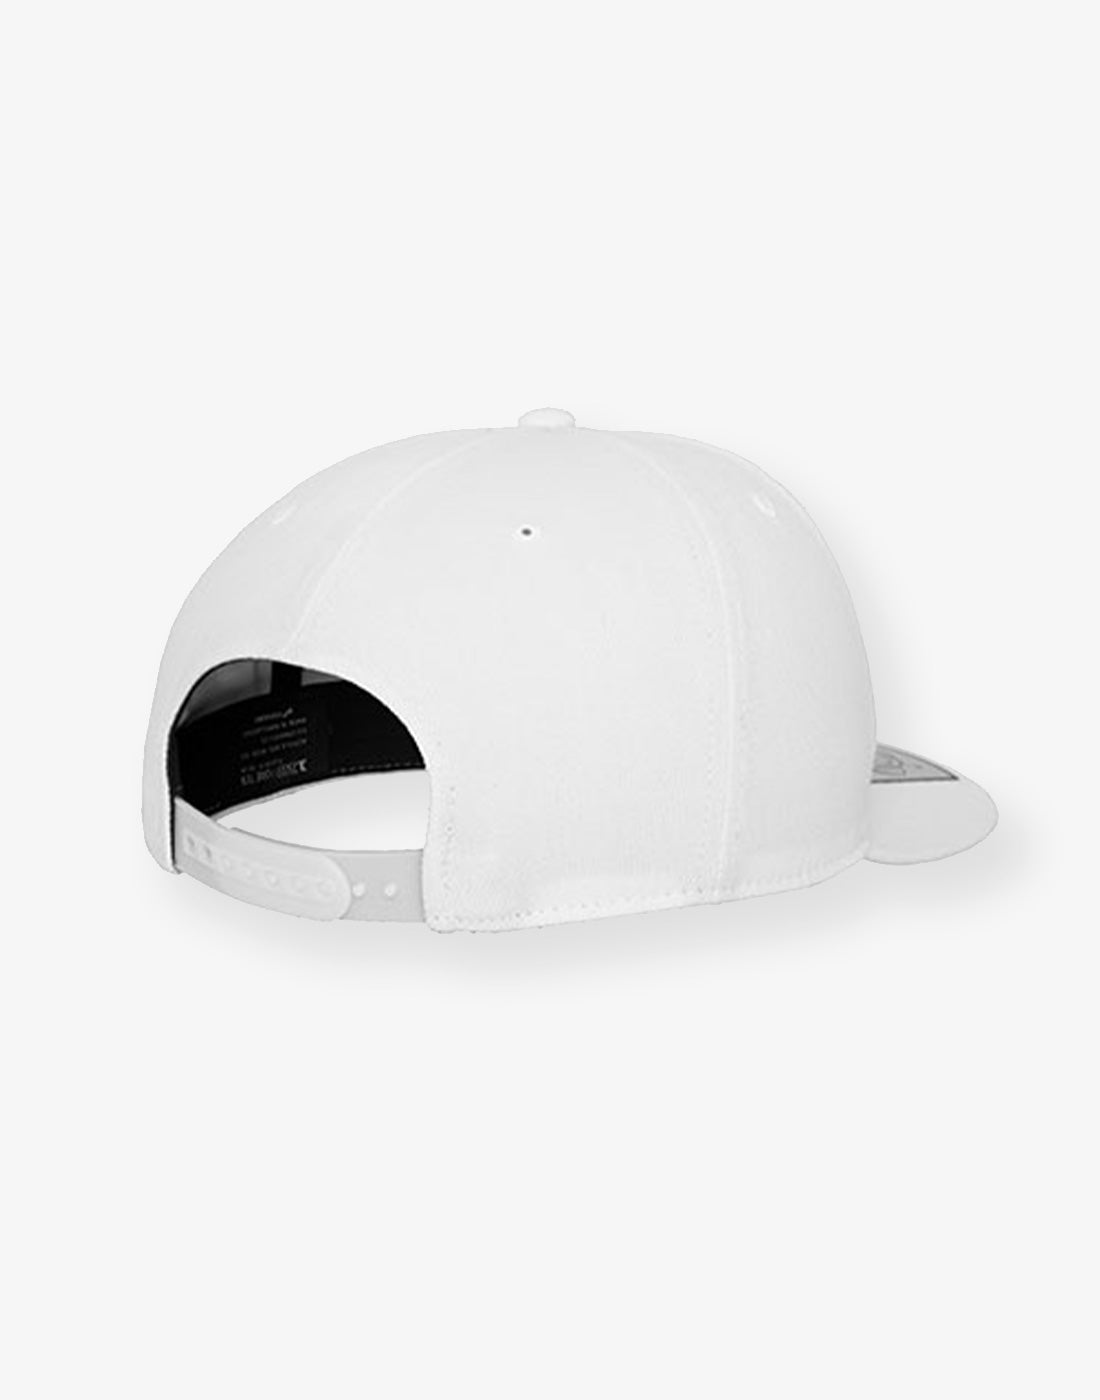 110 Snapback Cap | One Size | Black & White